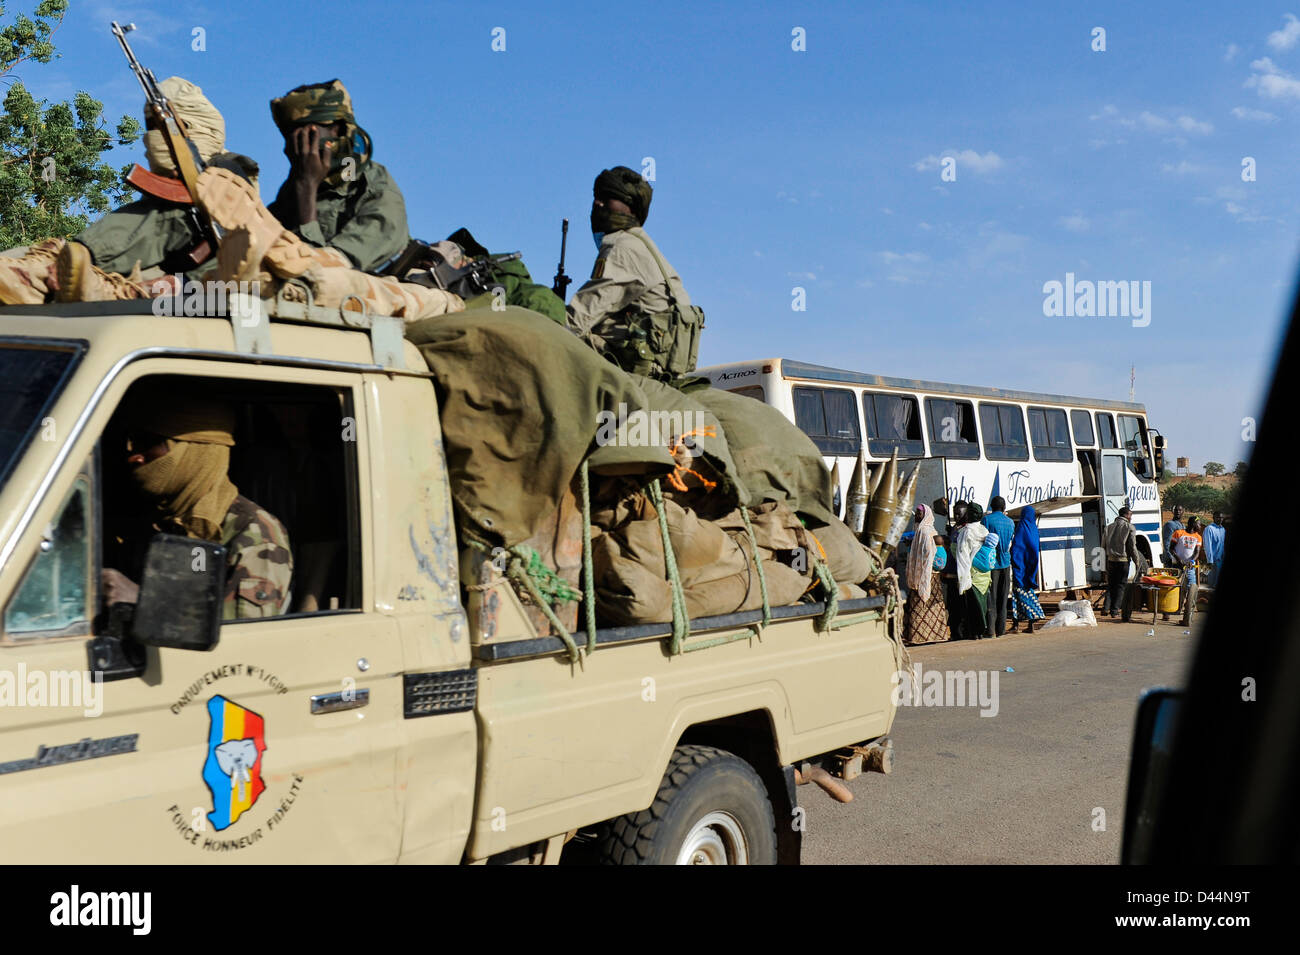 NIGER, circa 2000 soldati armati del ciad con Toyota in viaggio per il Mali, fanno parte della missione ECOWAS nella guerra del Mali nel 2012 per sostenere le truppe francesi contro i gruppi terroristici islamisti Foto Stock